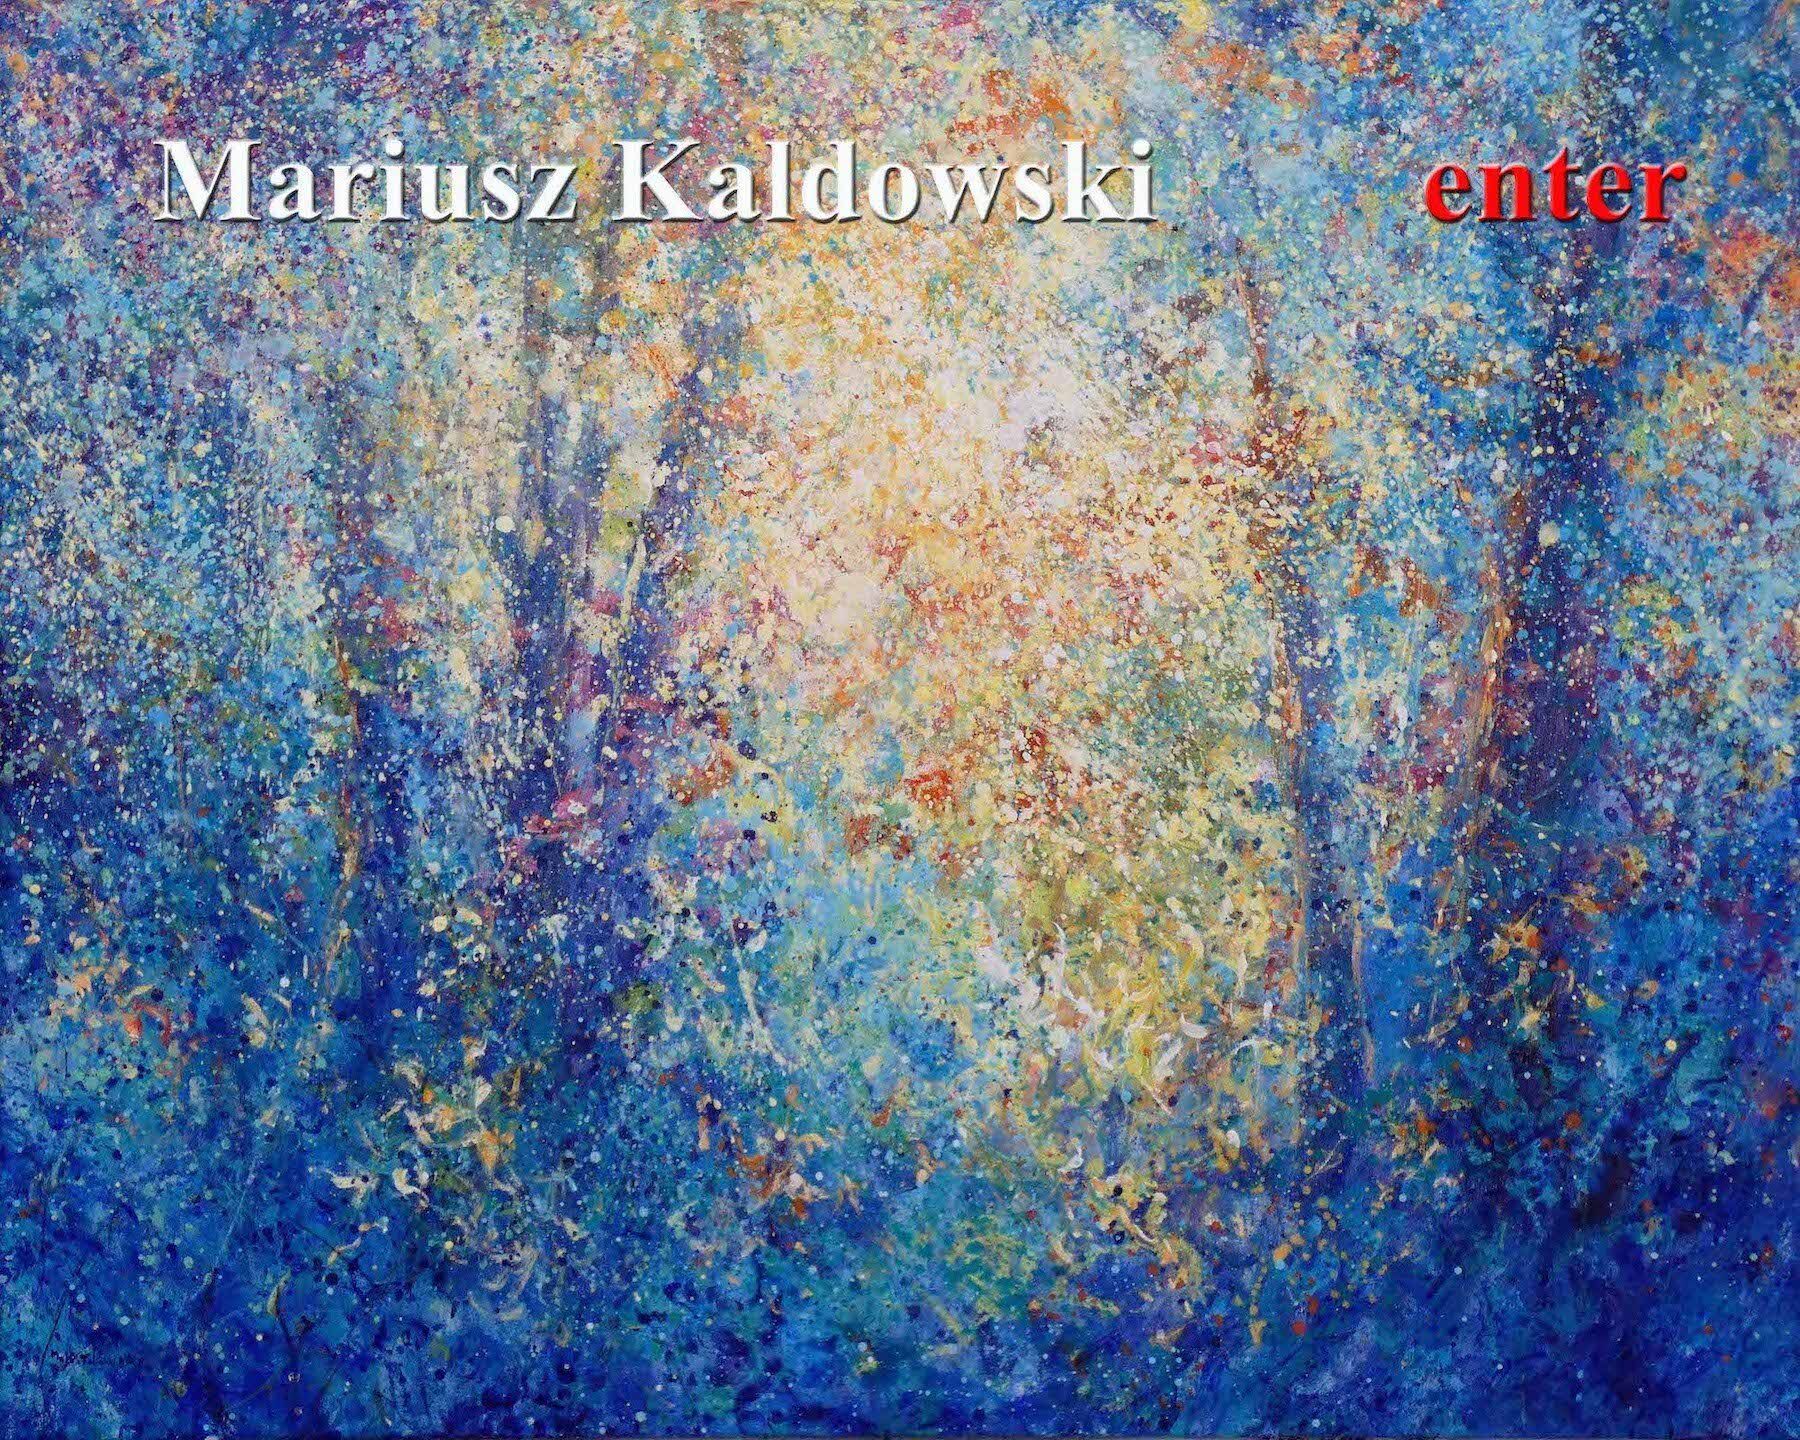 Mariusz Kaldowski website